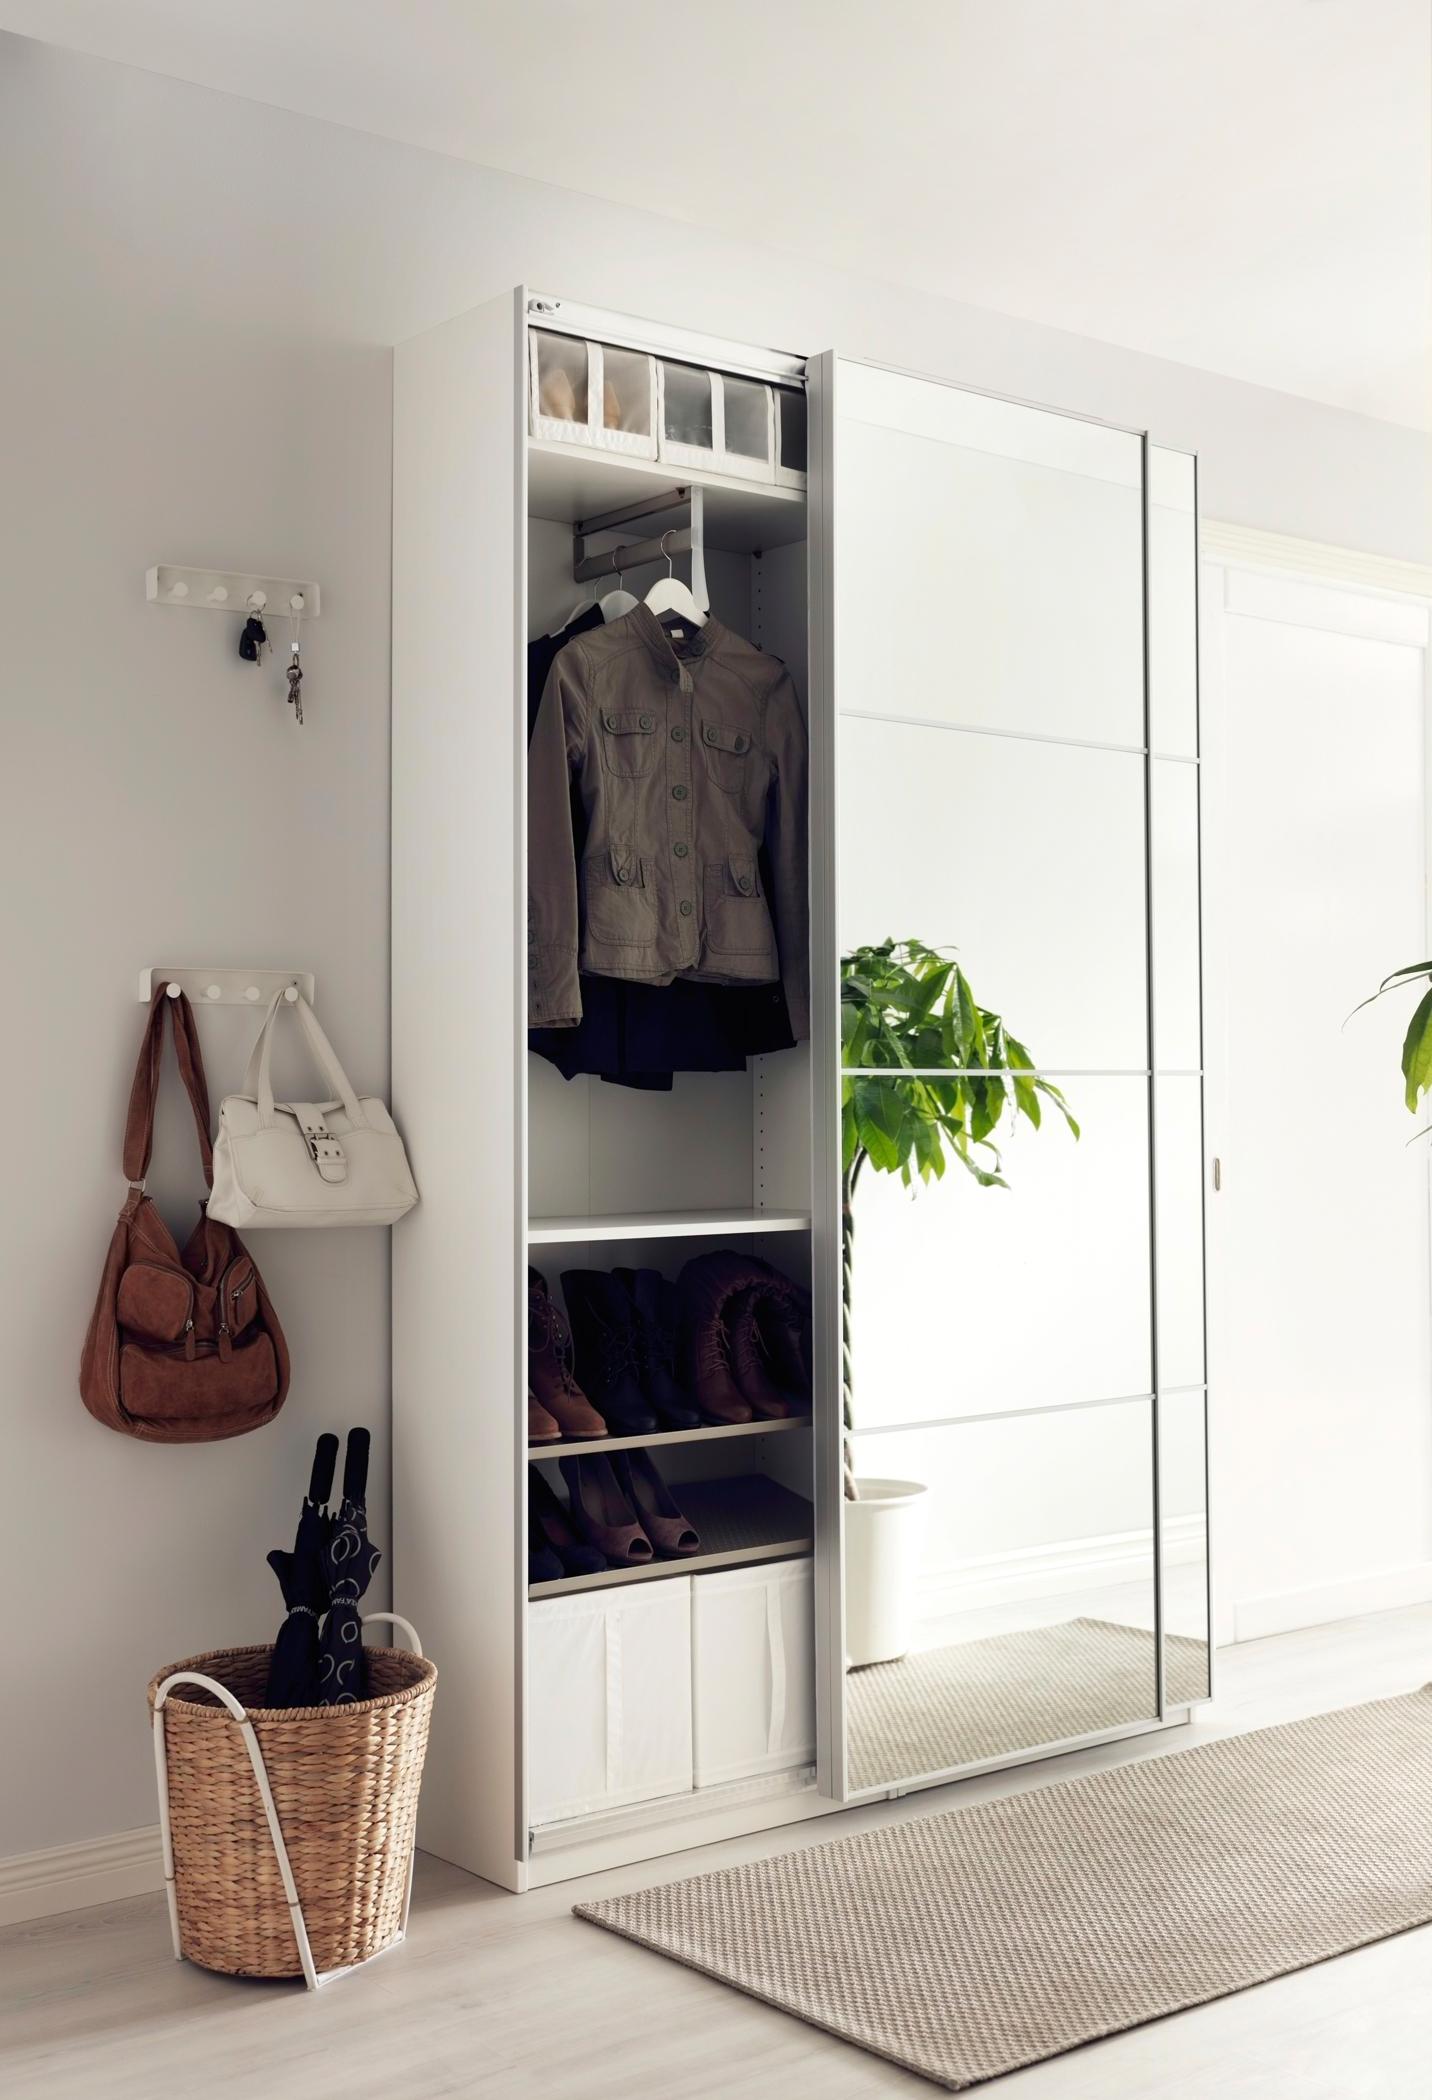 Garderobenschrank mit Schiebetür #ikea #garderobe #laminat #garderobenschrank ©Inter IKEA Systems B.V.